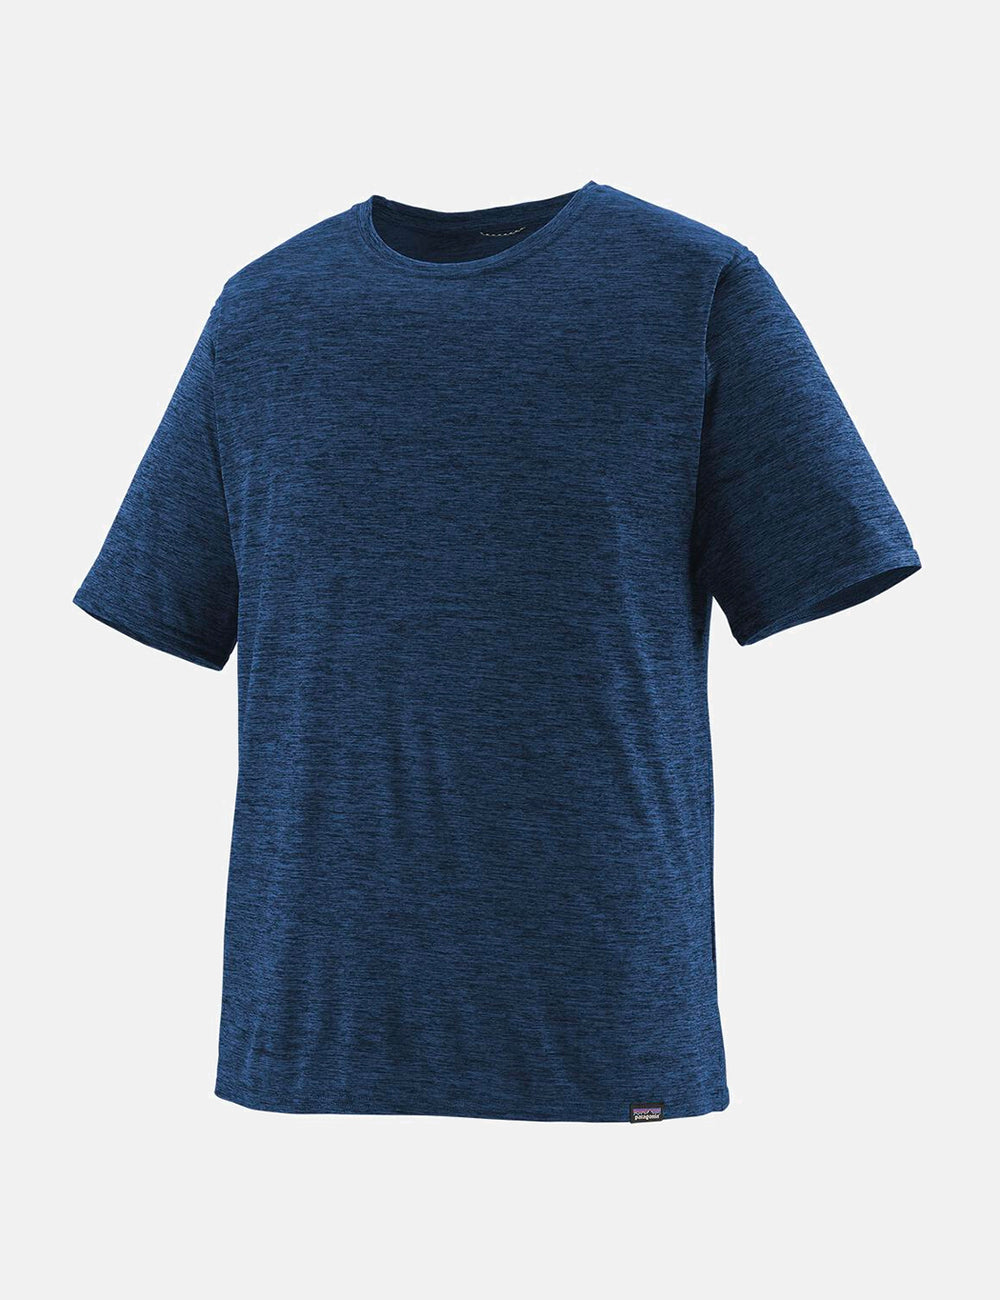 【新品未使用】Patagonia Tシャツ 45215 ネイビー ブルー L